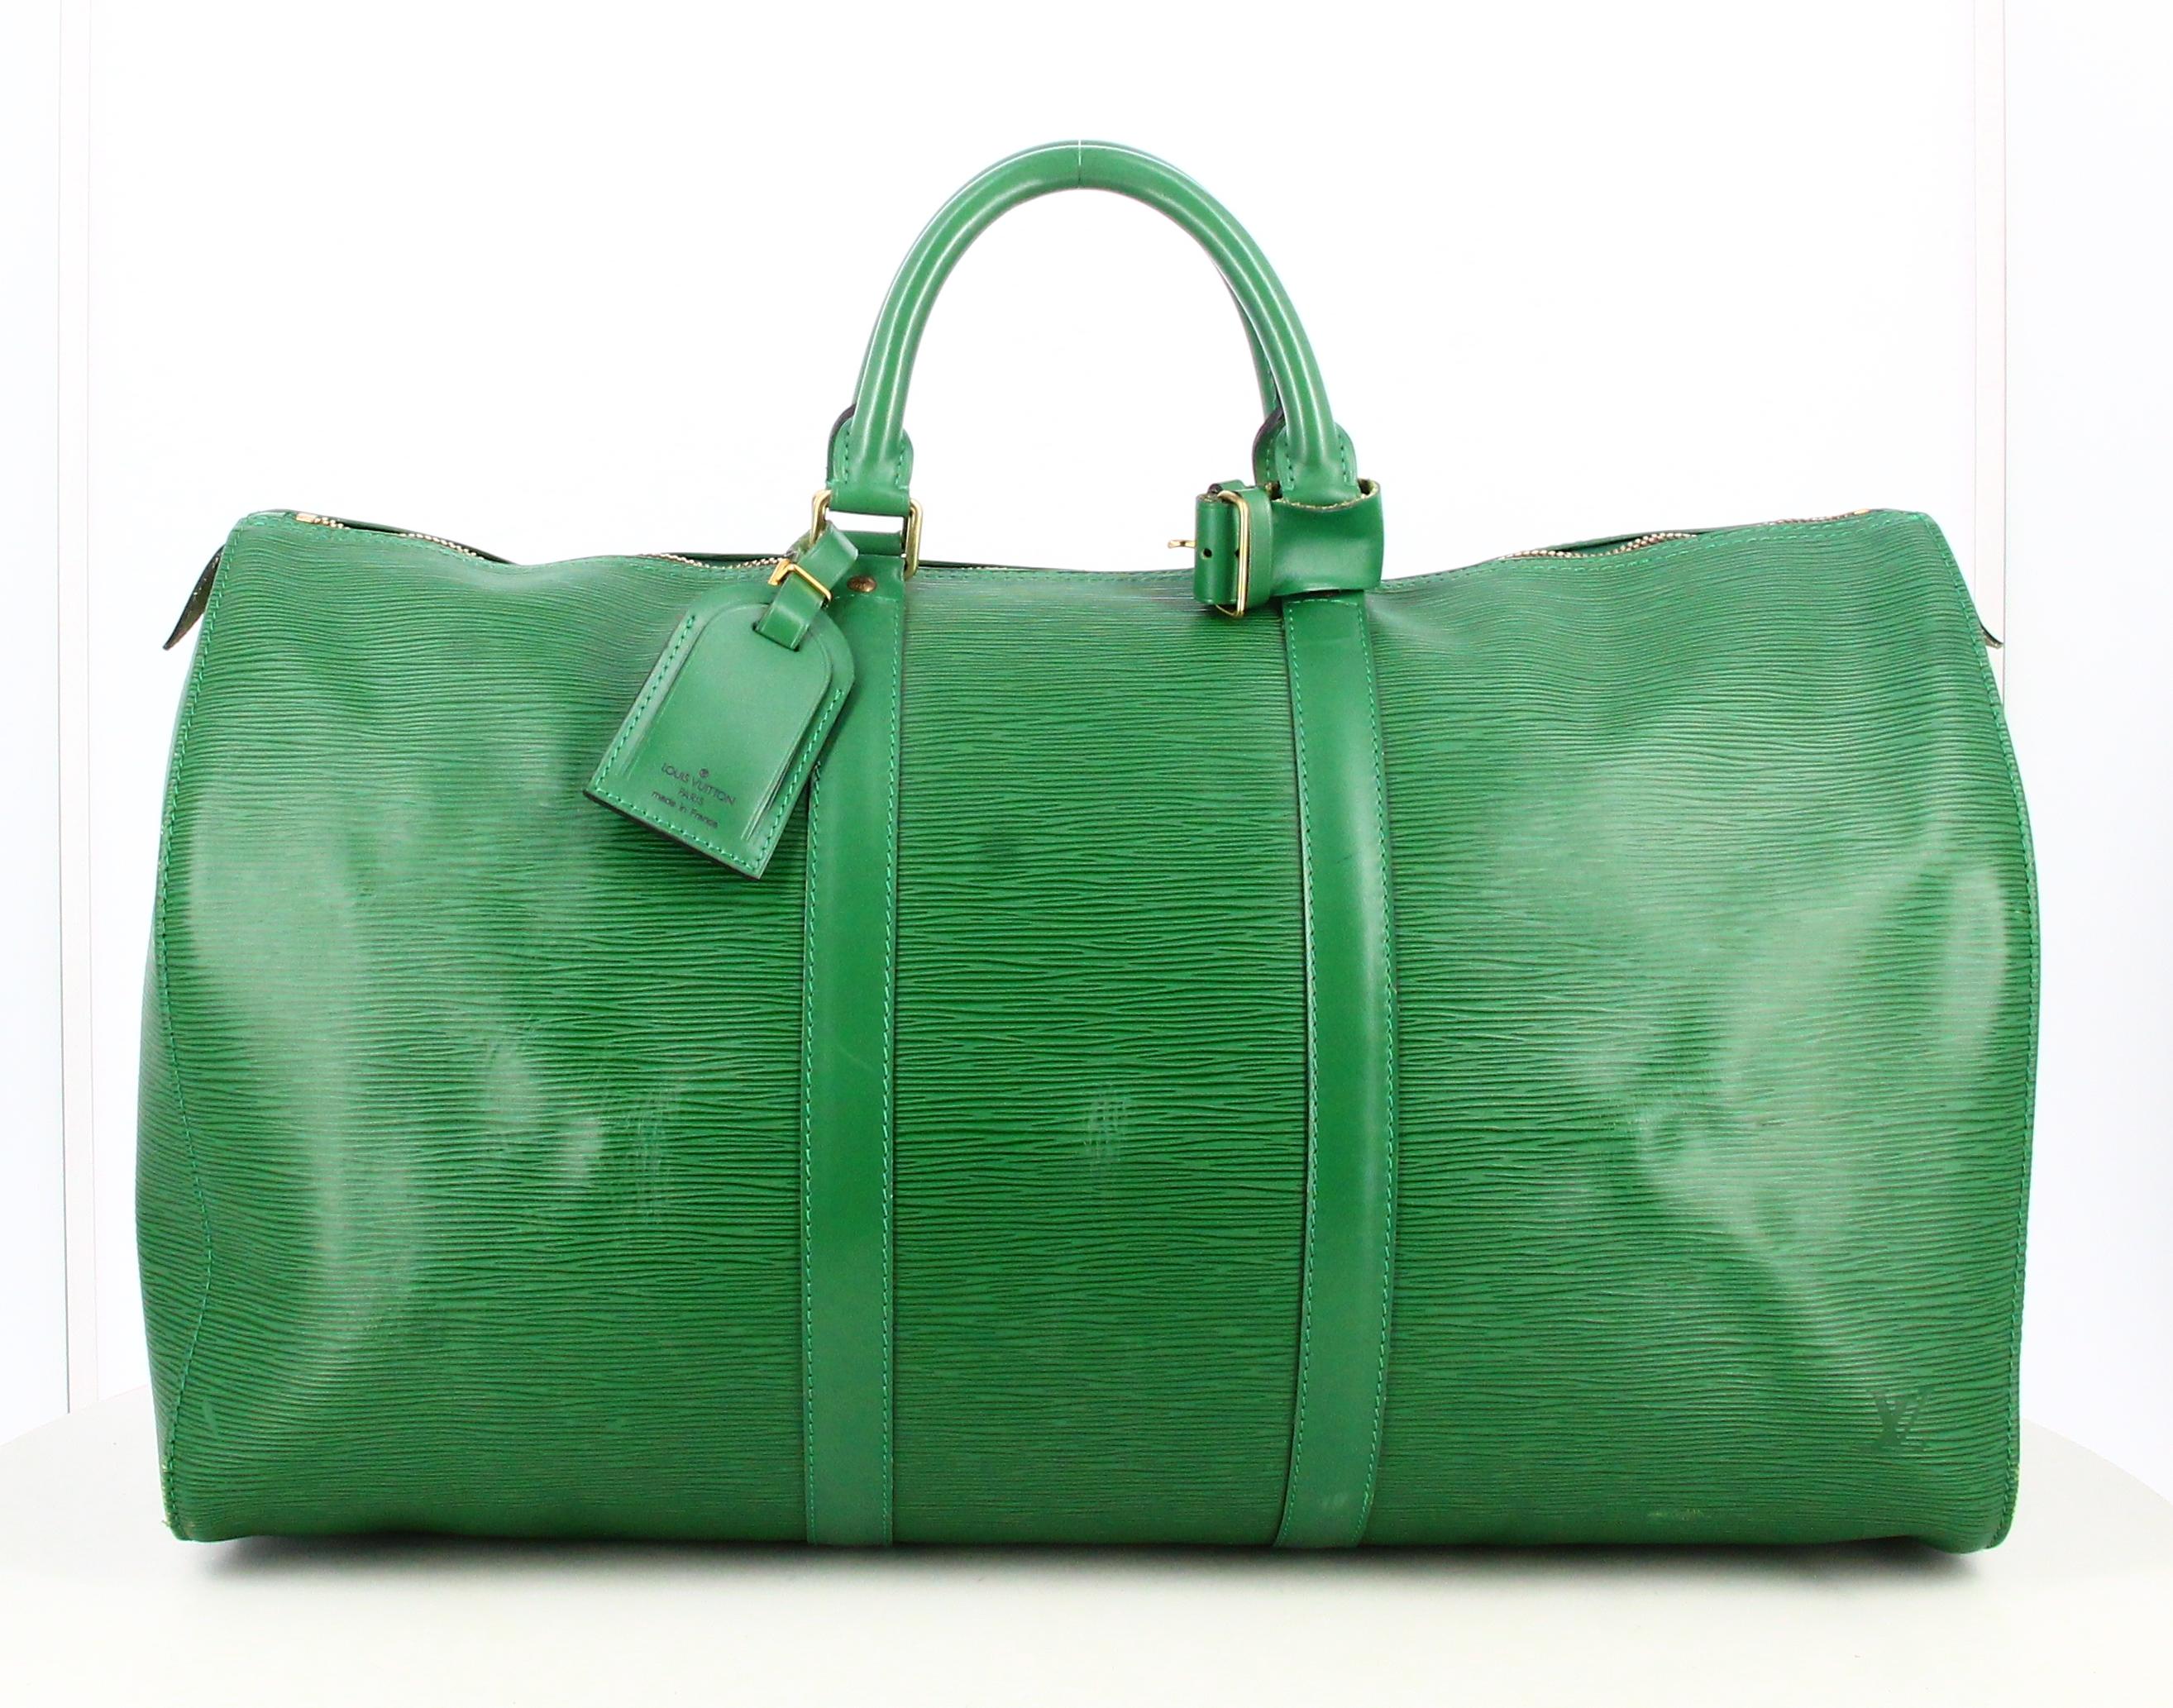 1995 Louis Vuitton Travel Bag Leather epi Green 

- Bon état. Présente de très légères traces d'usure au fil du temps. 
- Sac de voyage Louis Vuitton 
- Cuir épi vert 
- Deux petites lanières de cuir vert
- Fermoir : doré 
- Petite poche sur le côté